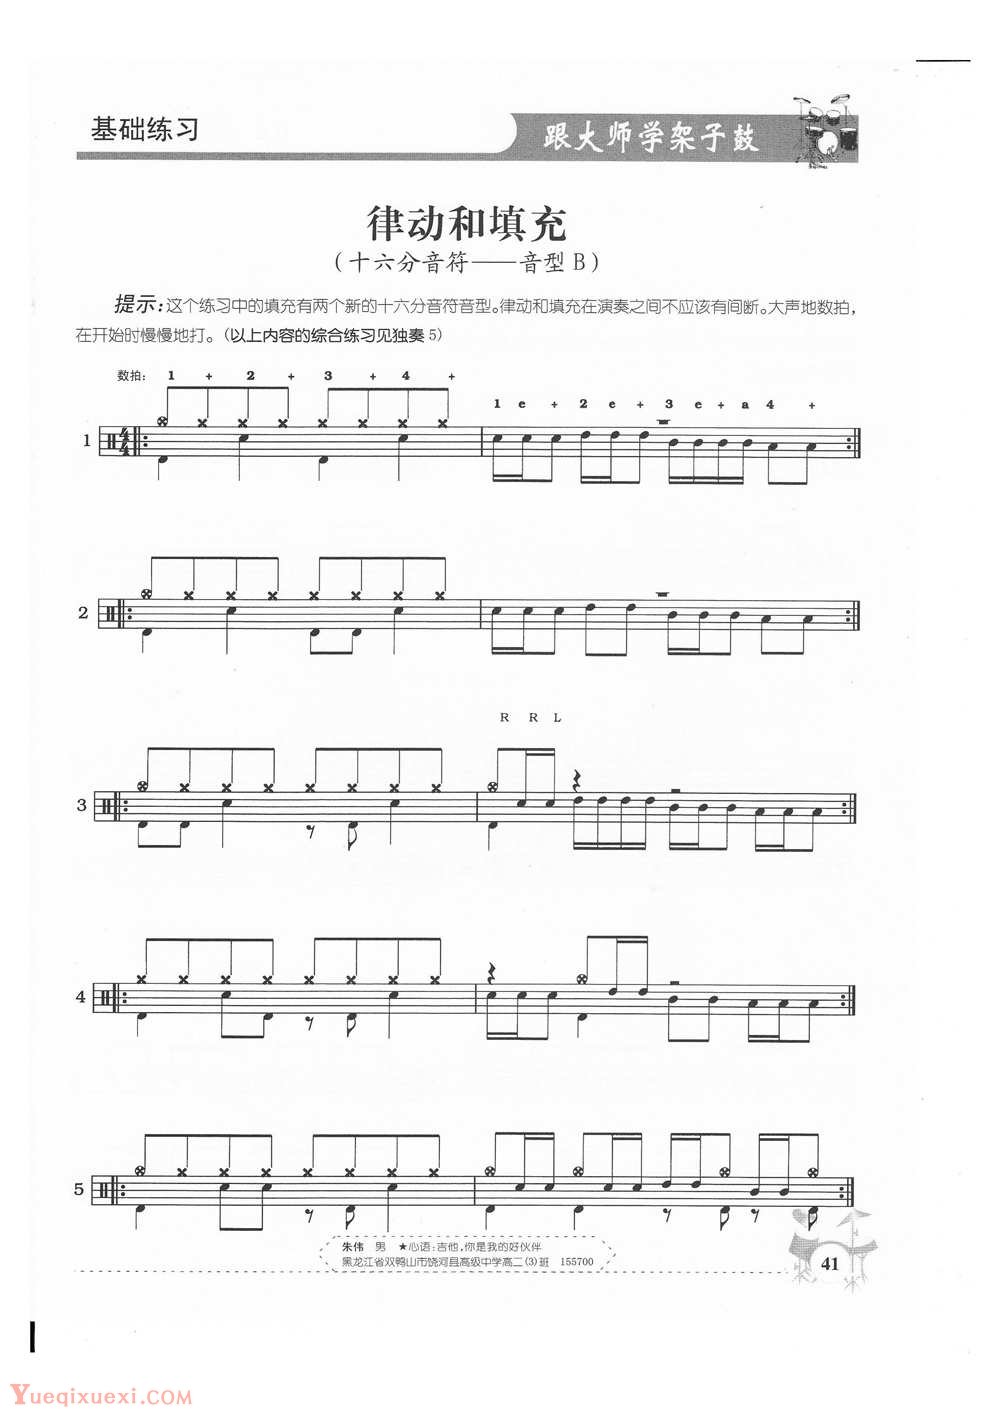 架子鼓基础练习 律动和填充(十六分音符——音型B)